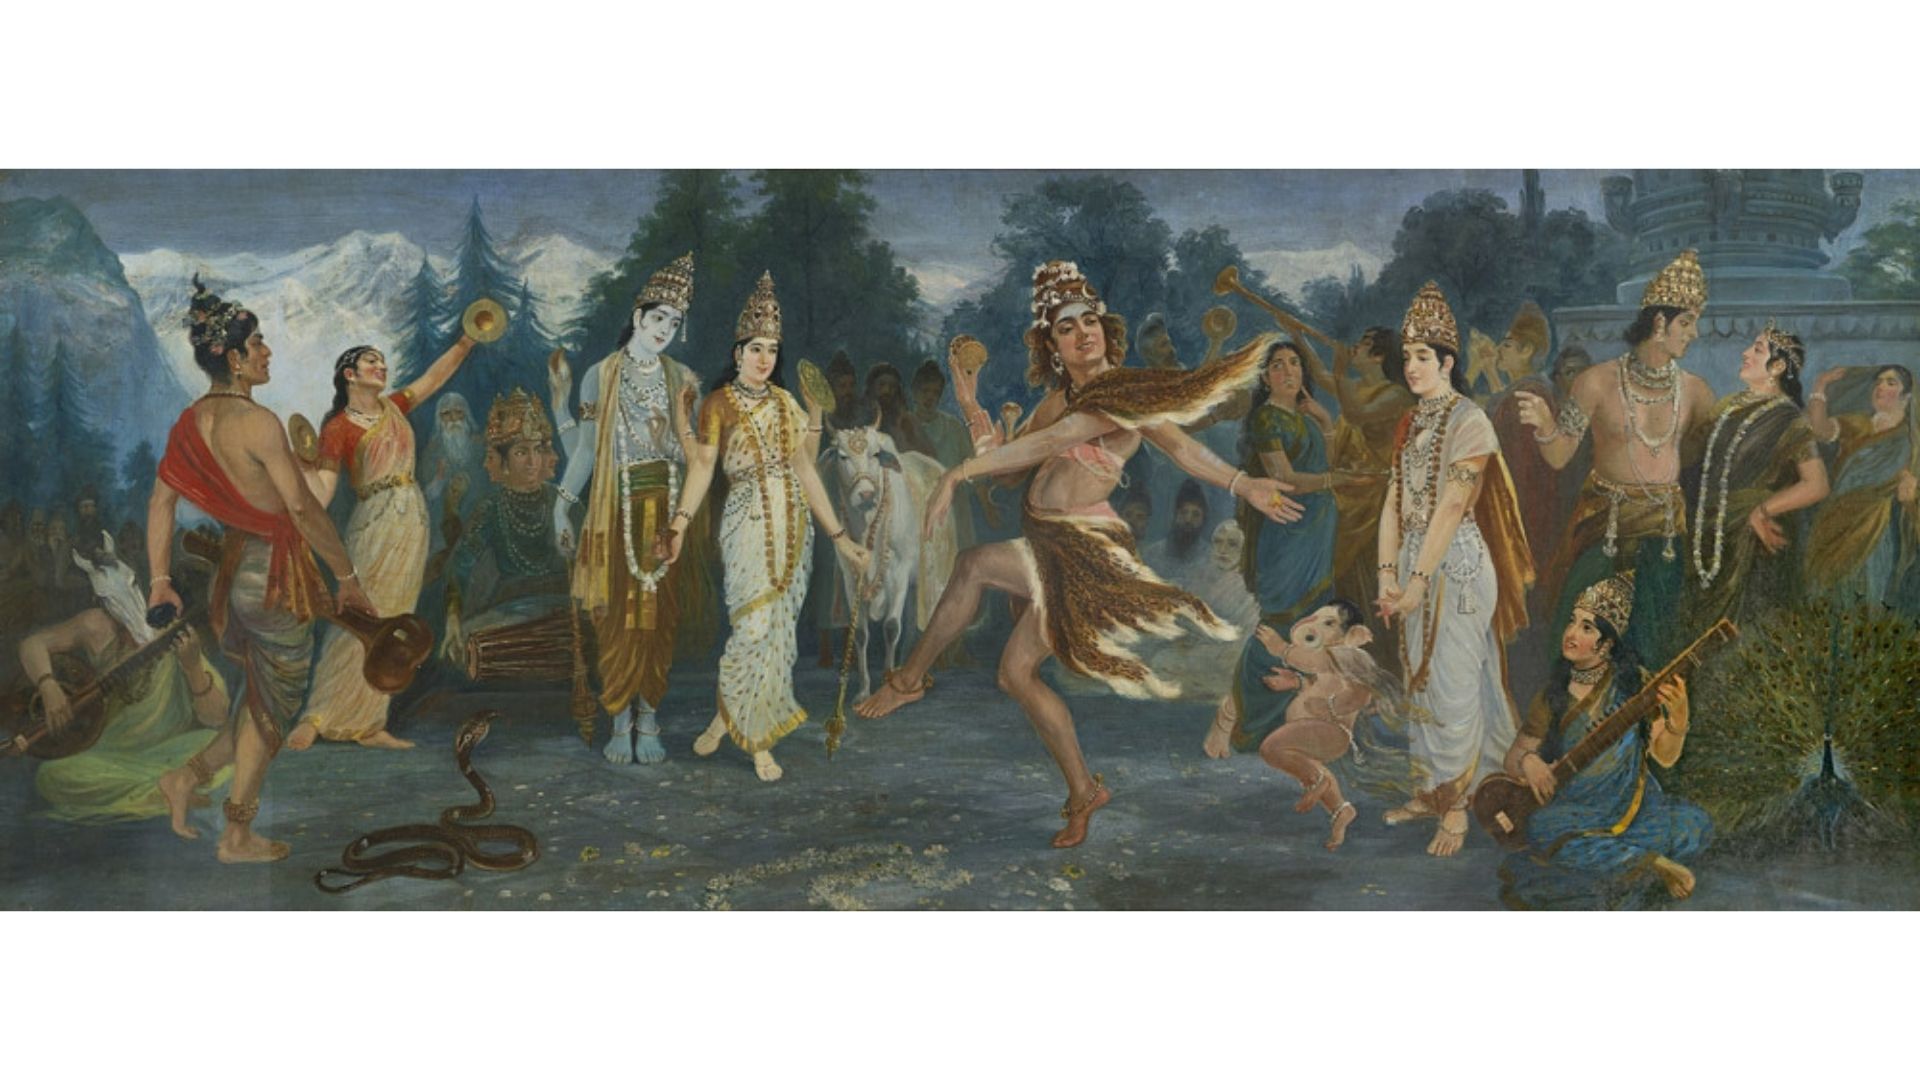 Lord-Shiva-performing-the-Tāṇḍava